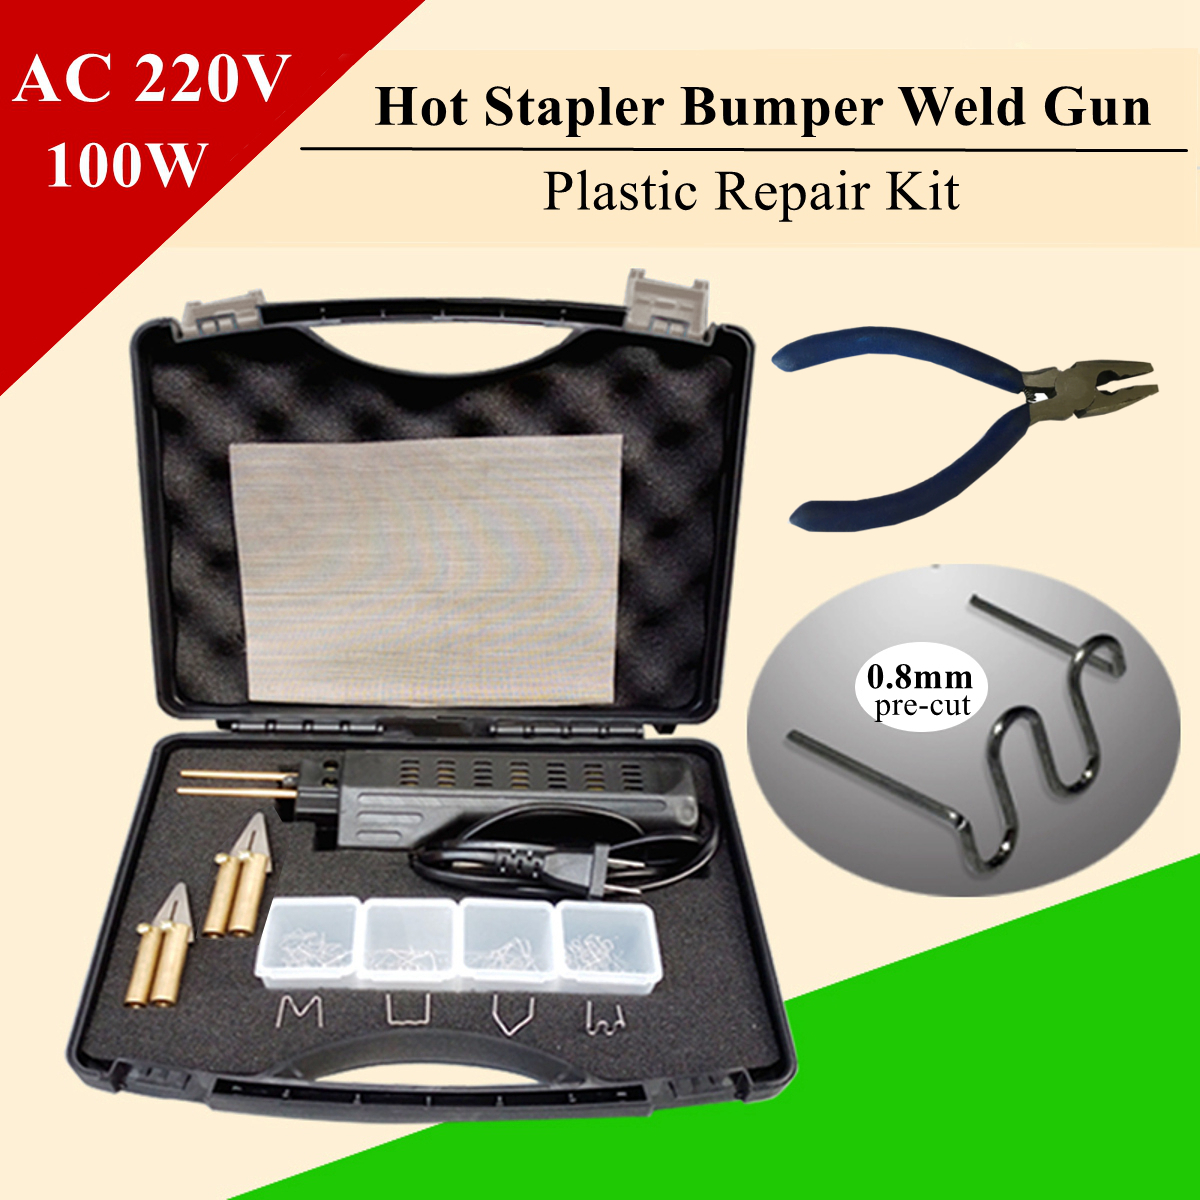 206-pcs-Hot-Stapler-Bumper-Fender-Fairing-Welder-Plastic-Repair-Kitl-1166862-1